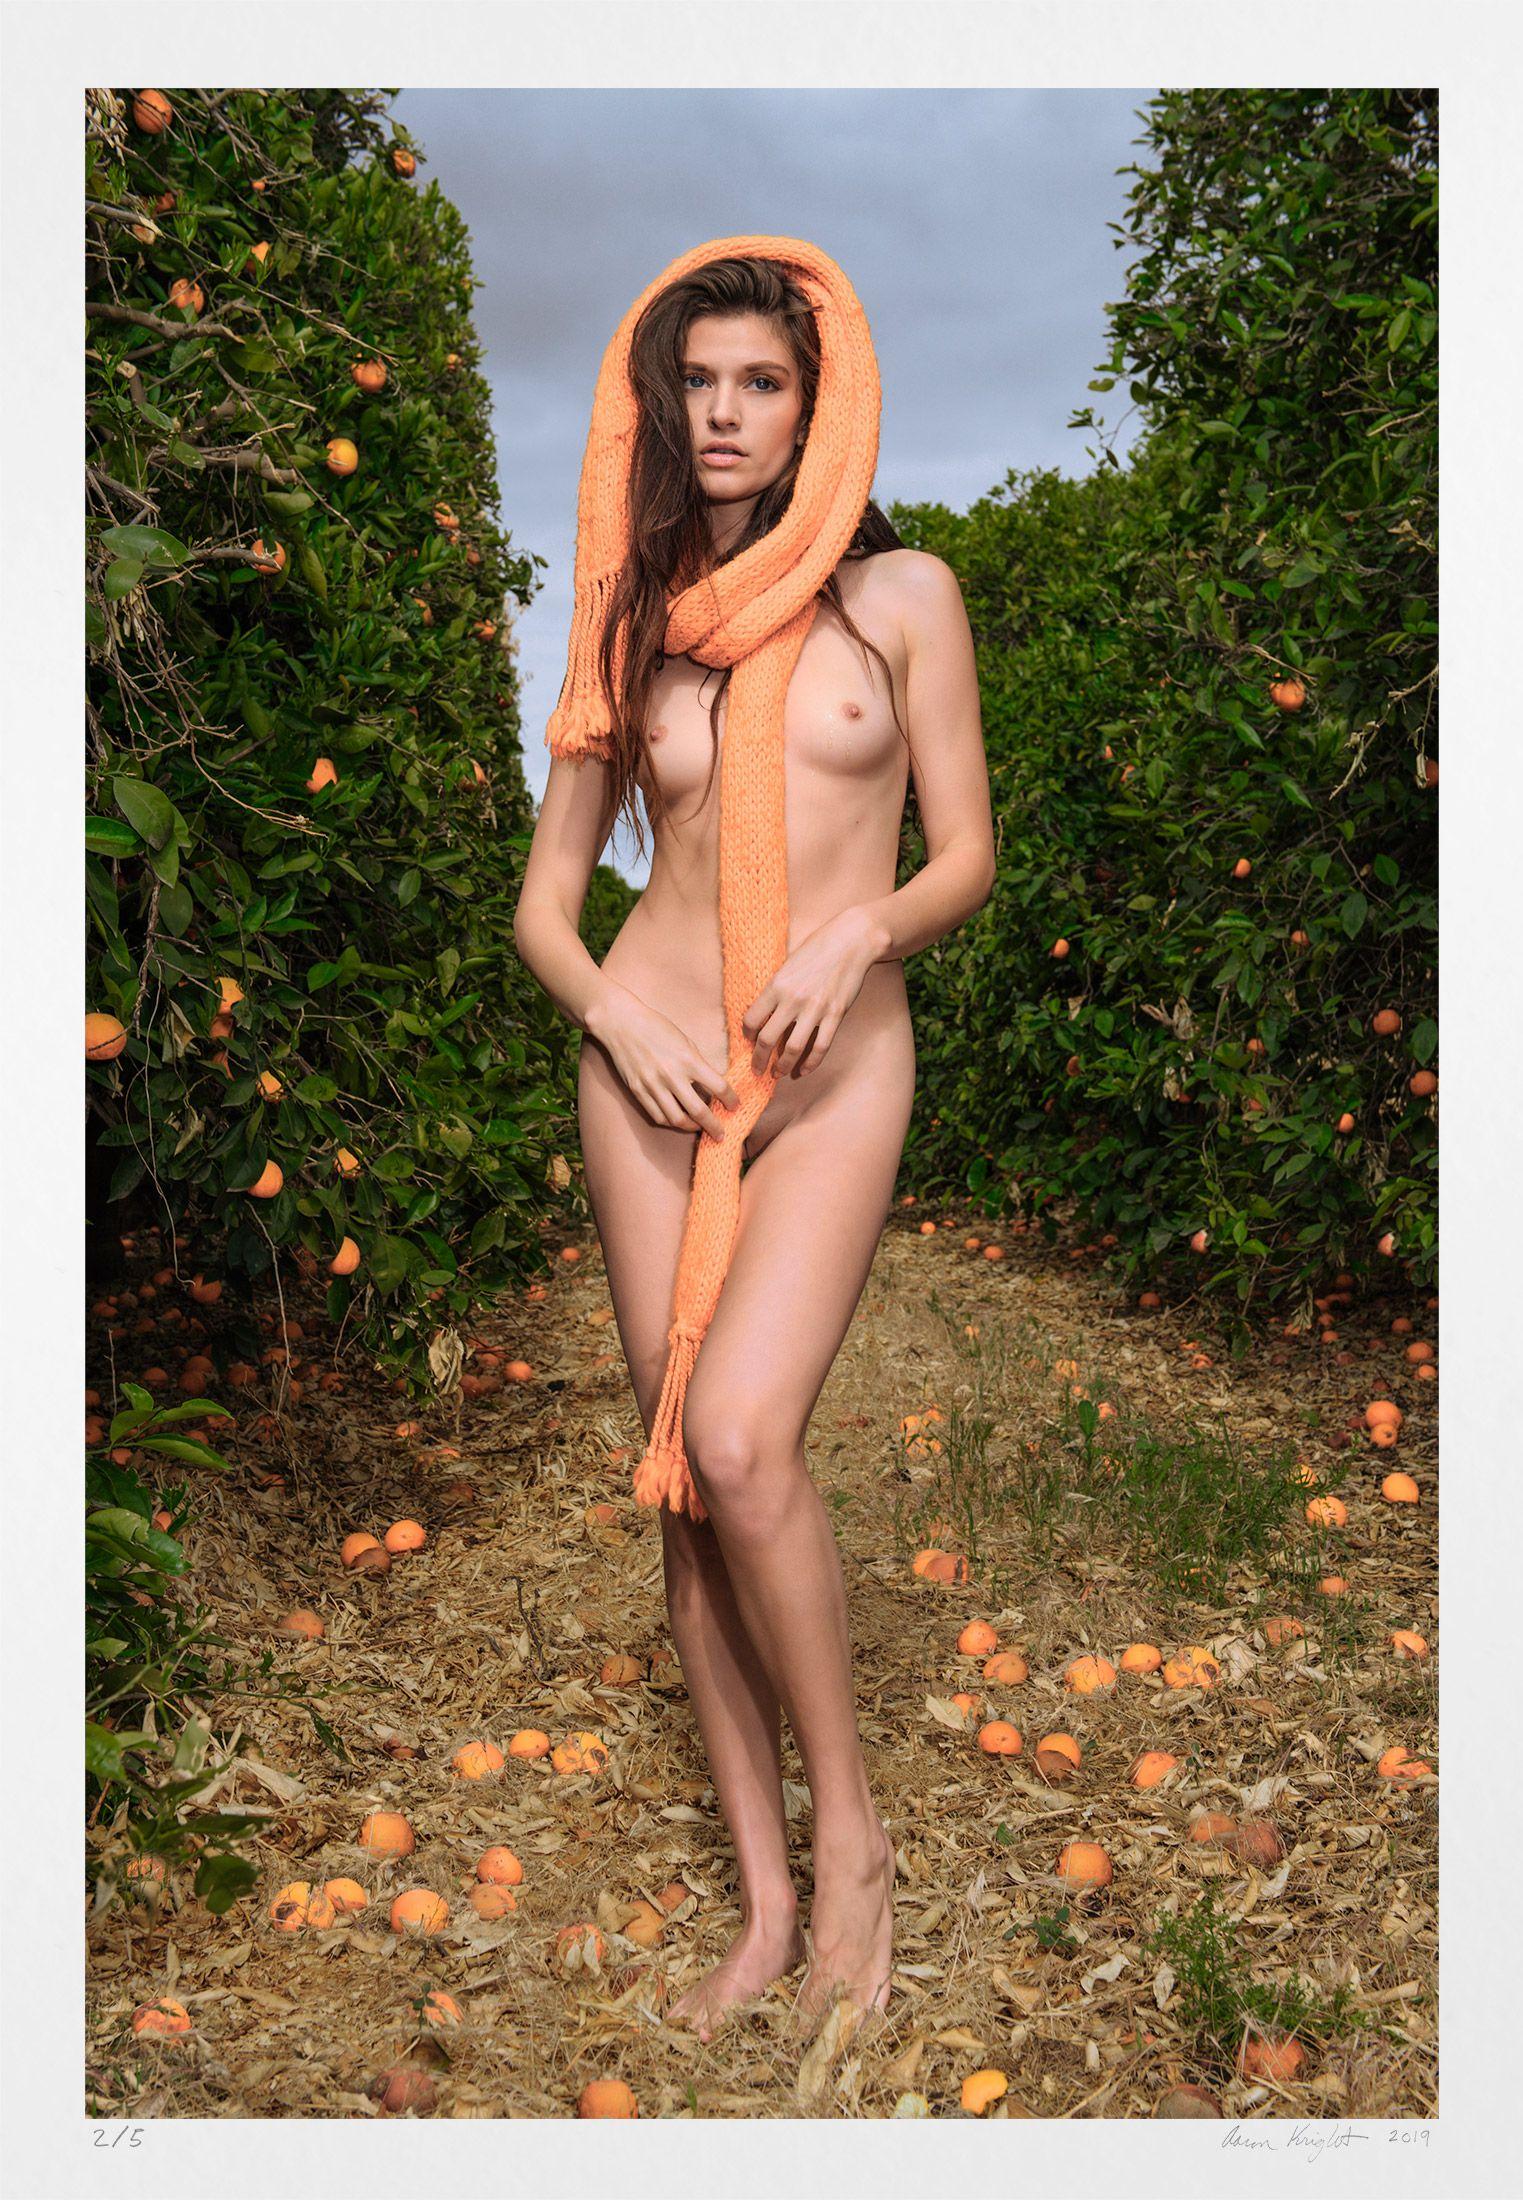 Aaron Knight Color Photograph – Orange Grove, Fotografie, Archivtinte- Jet